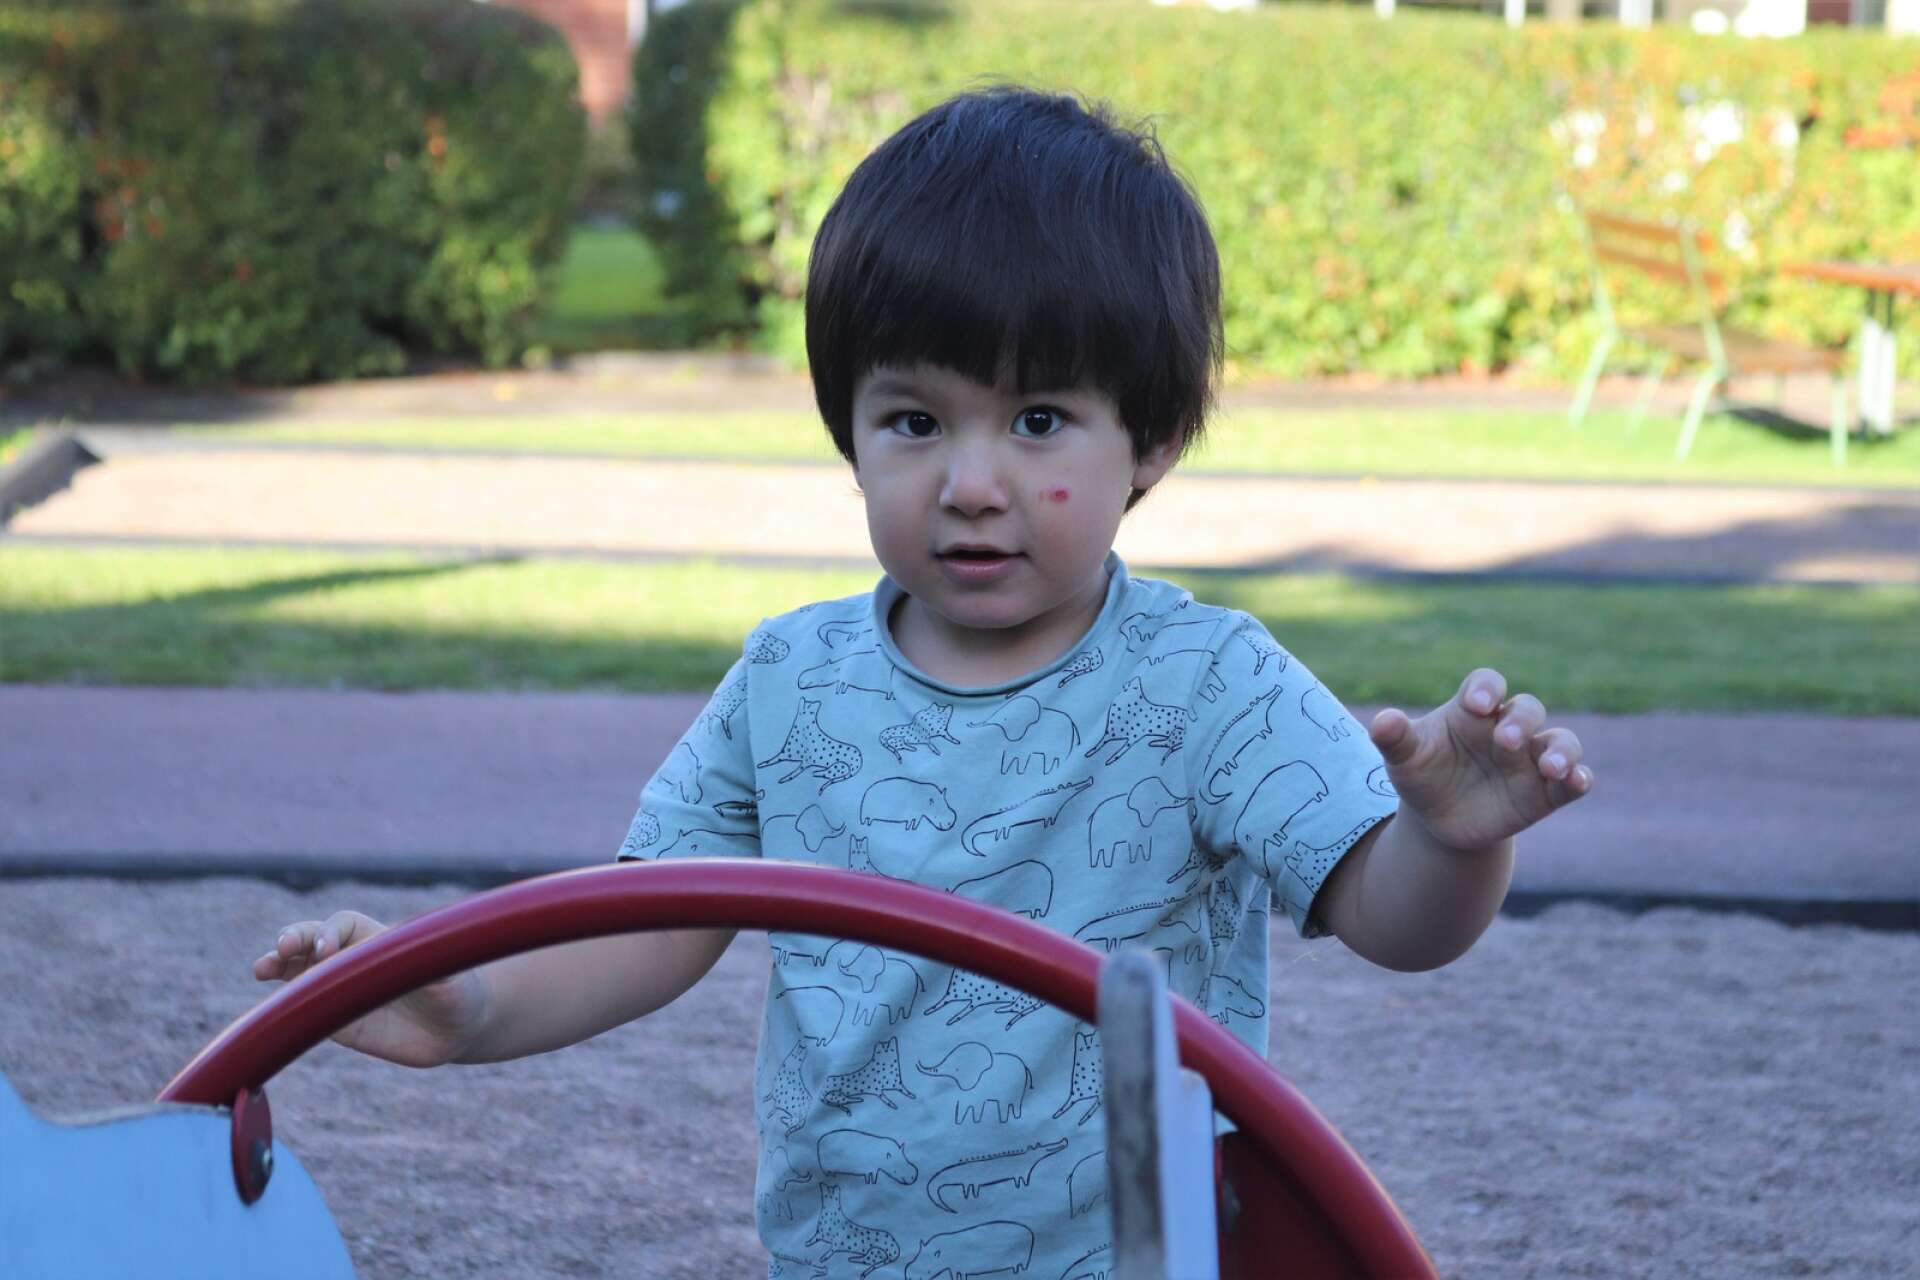 Migrationsverket ska besluta om tvåårige Elias Rahimi, som är född i Sverige om han ska utvisas efter föräldrarna och övriga familjens utvisningsbeslut. 